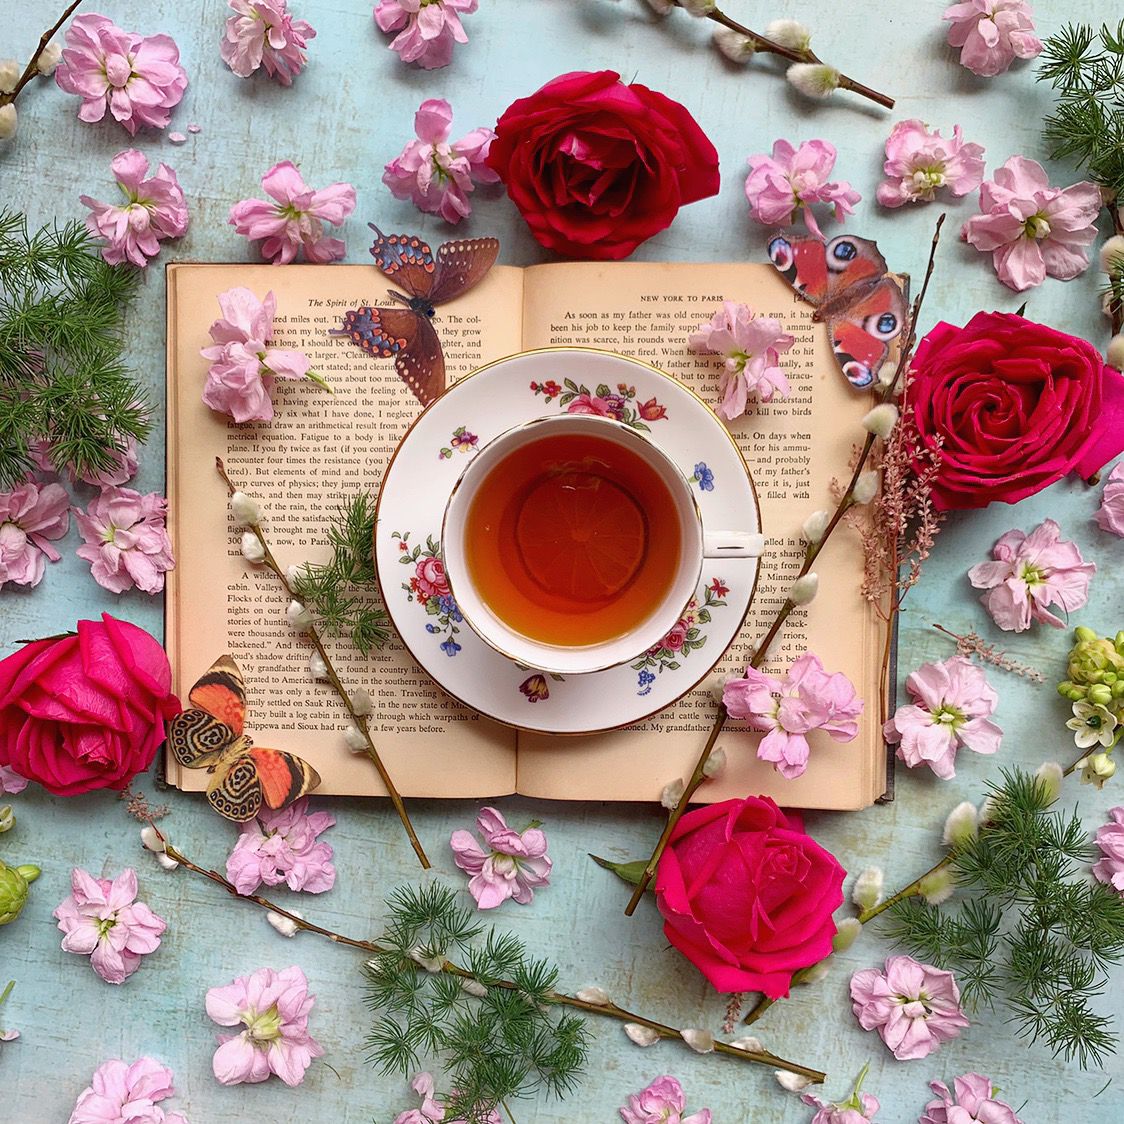 cách làm trà hoa hồng